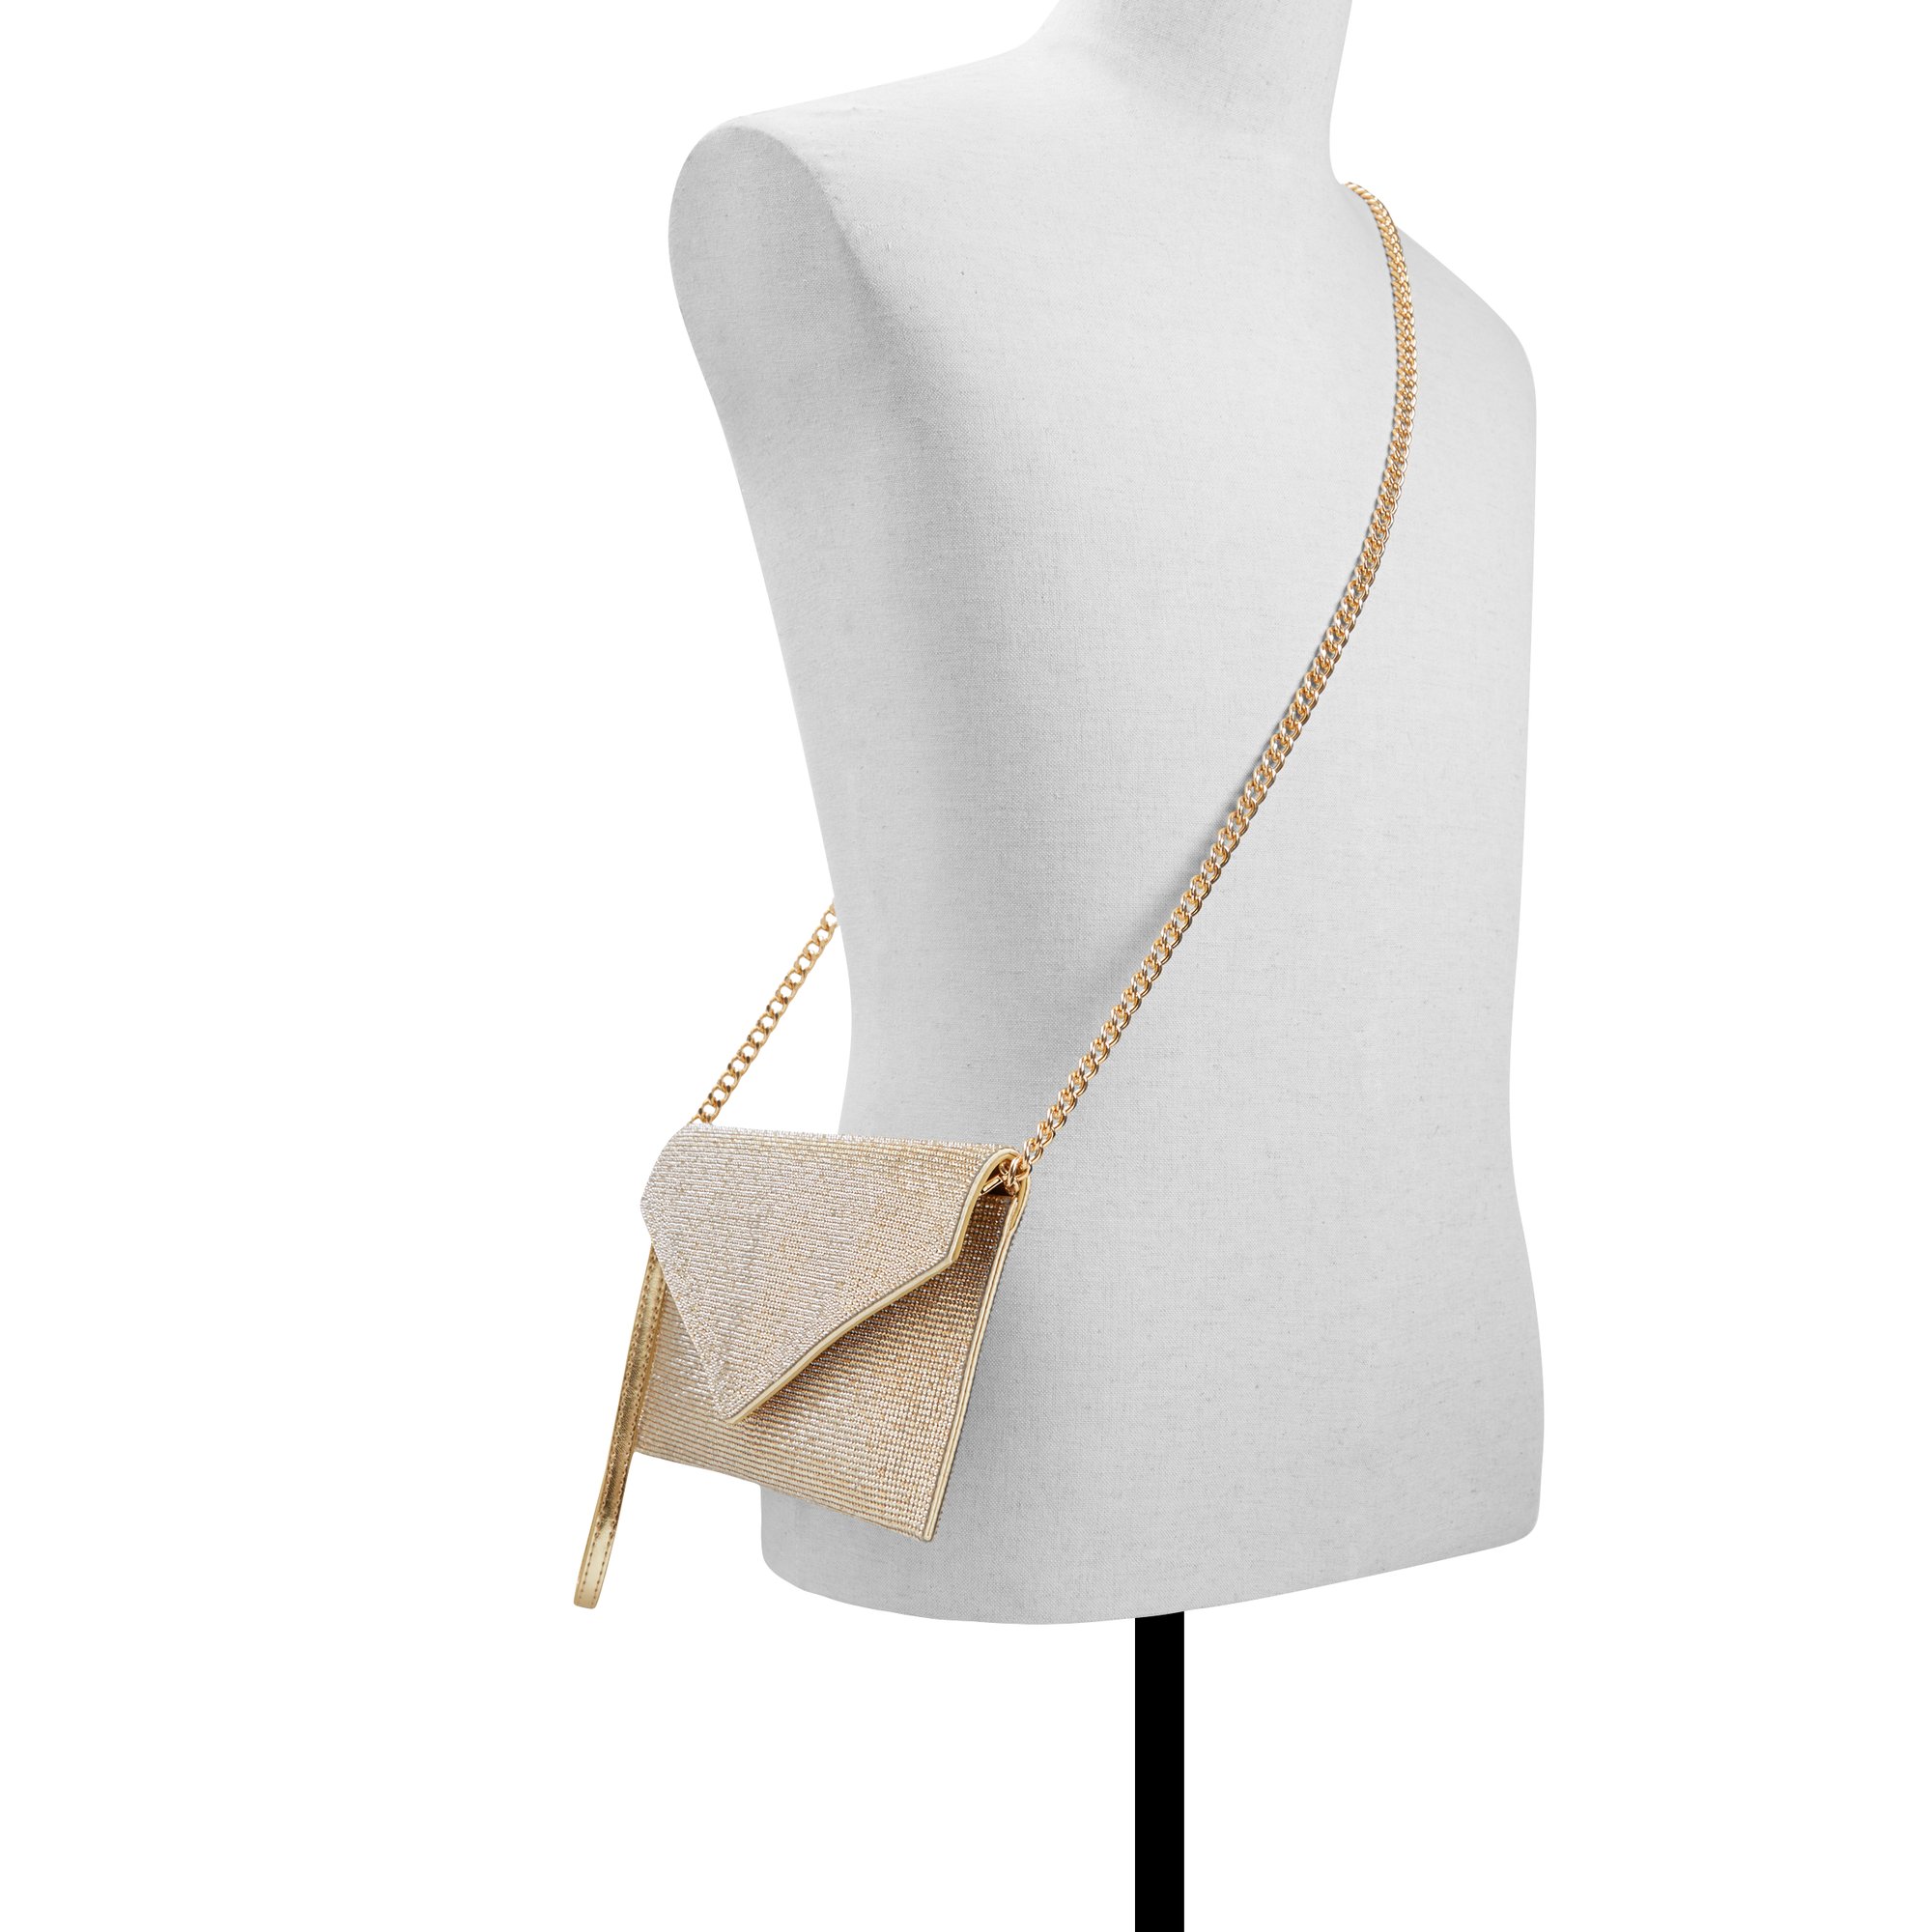 ALDO Mallasvex - Women's Handbags Clutches & Evening Bags